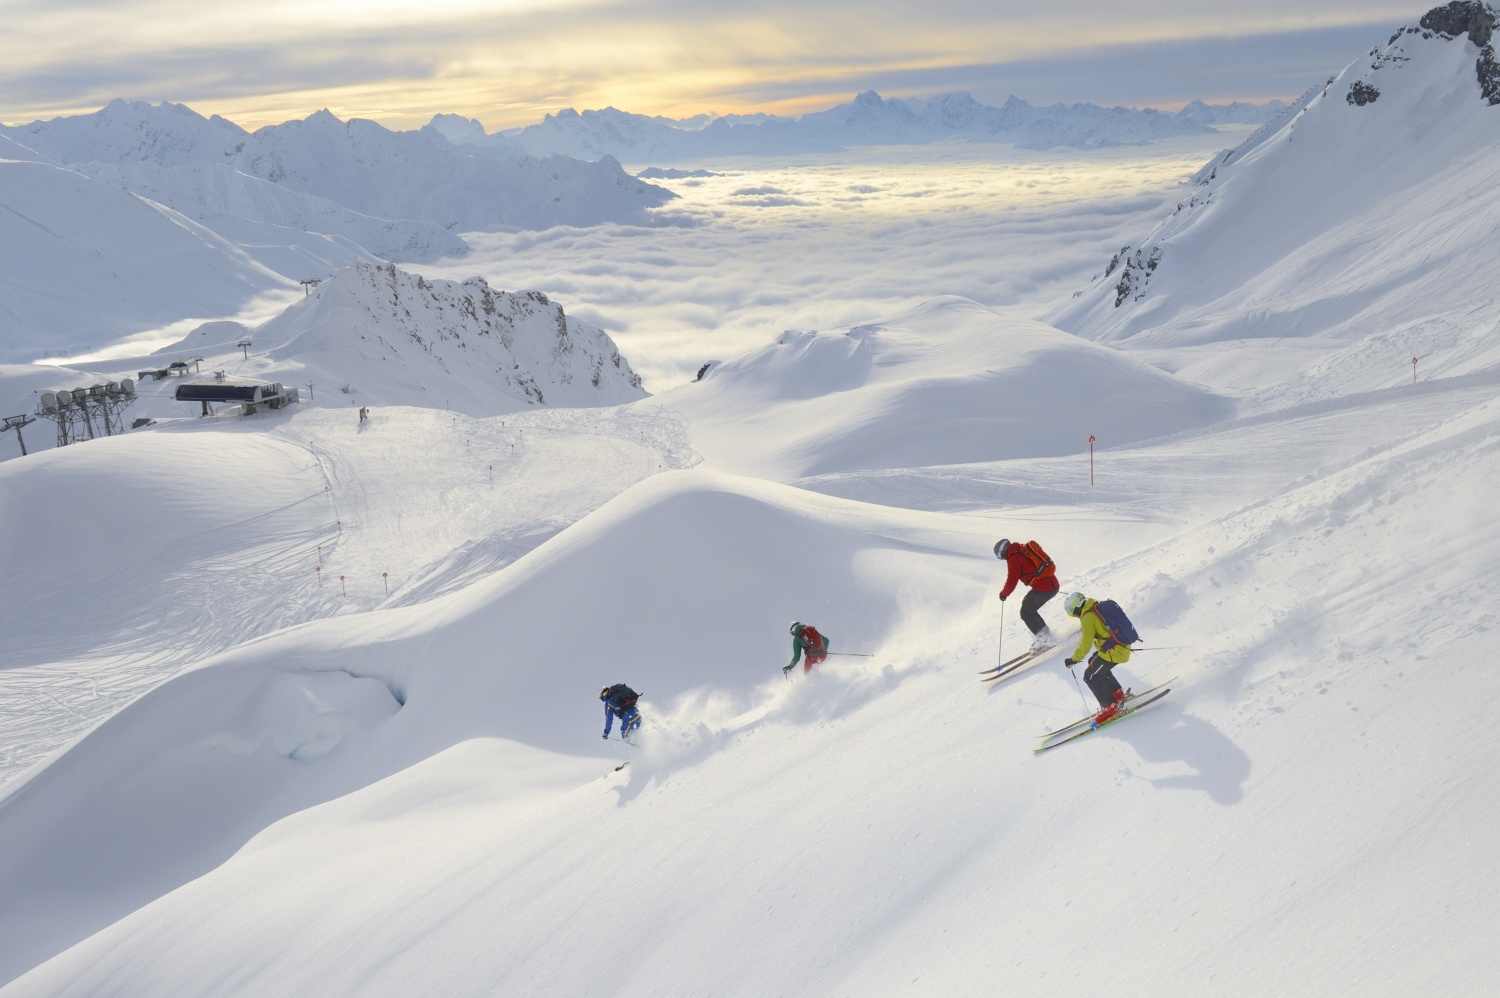 austria ski trip cost